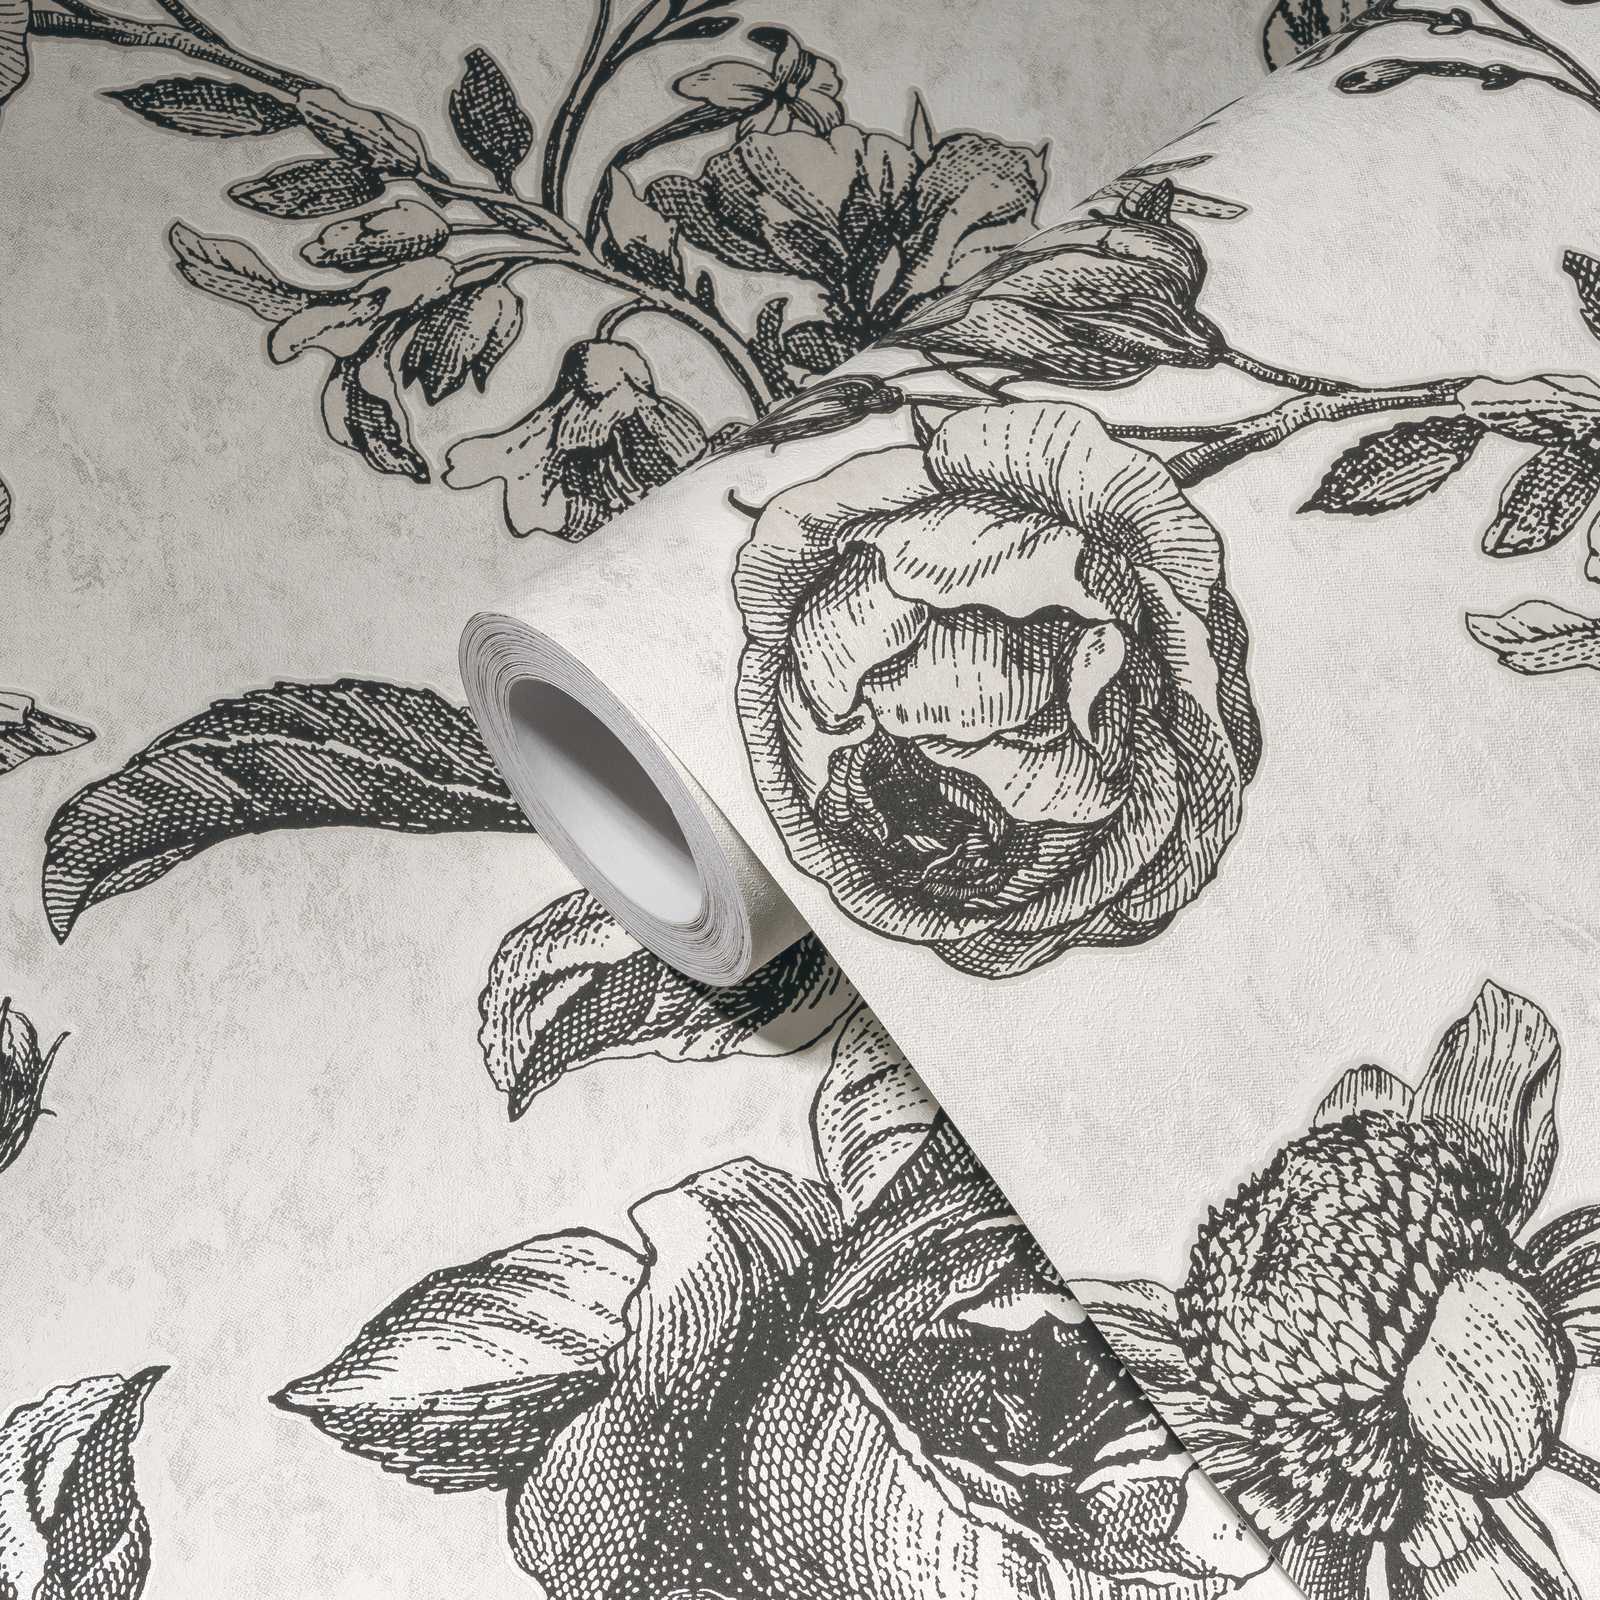             Zwart-crème behang rozen bloemenpatroon - wit, zwart, grijs
        